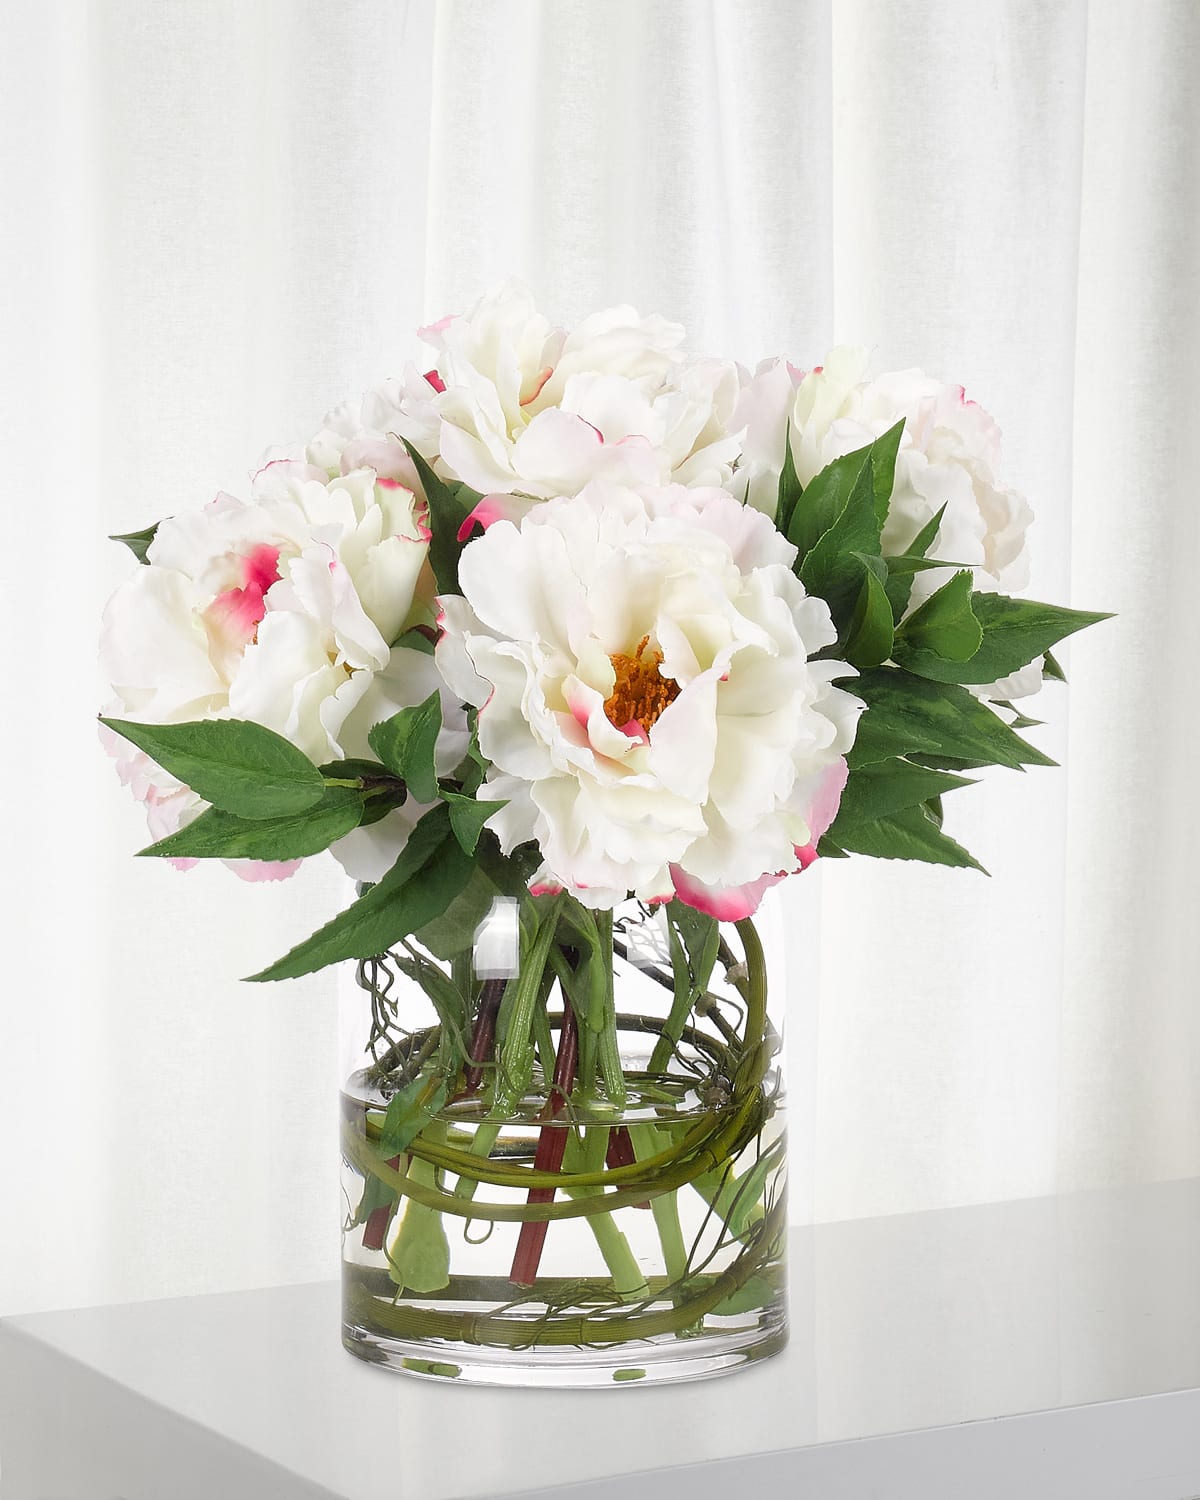 Peony Faux-Floral Arrangement in Glass Vase, 12wx12dx11h